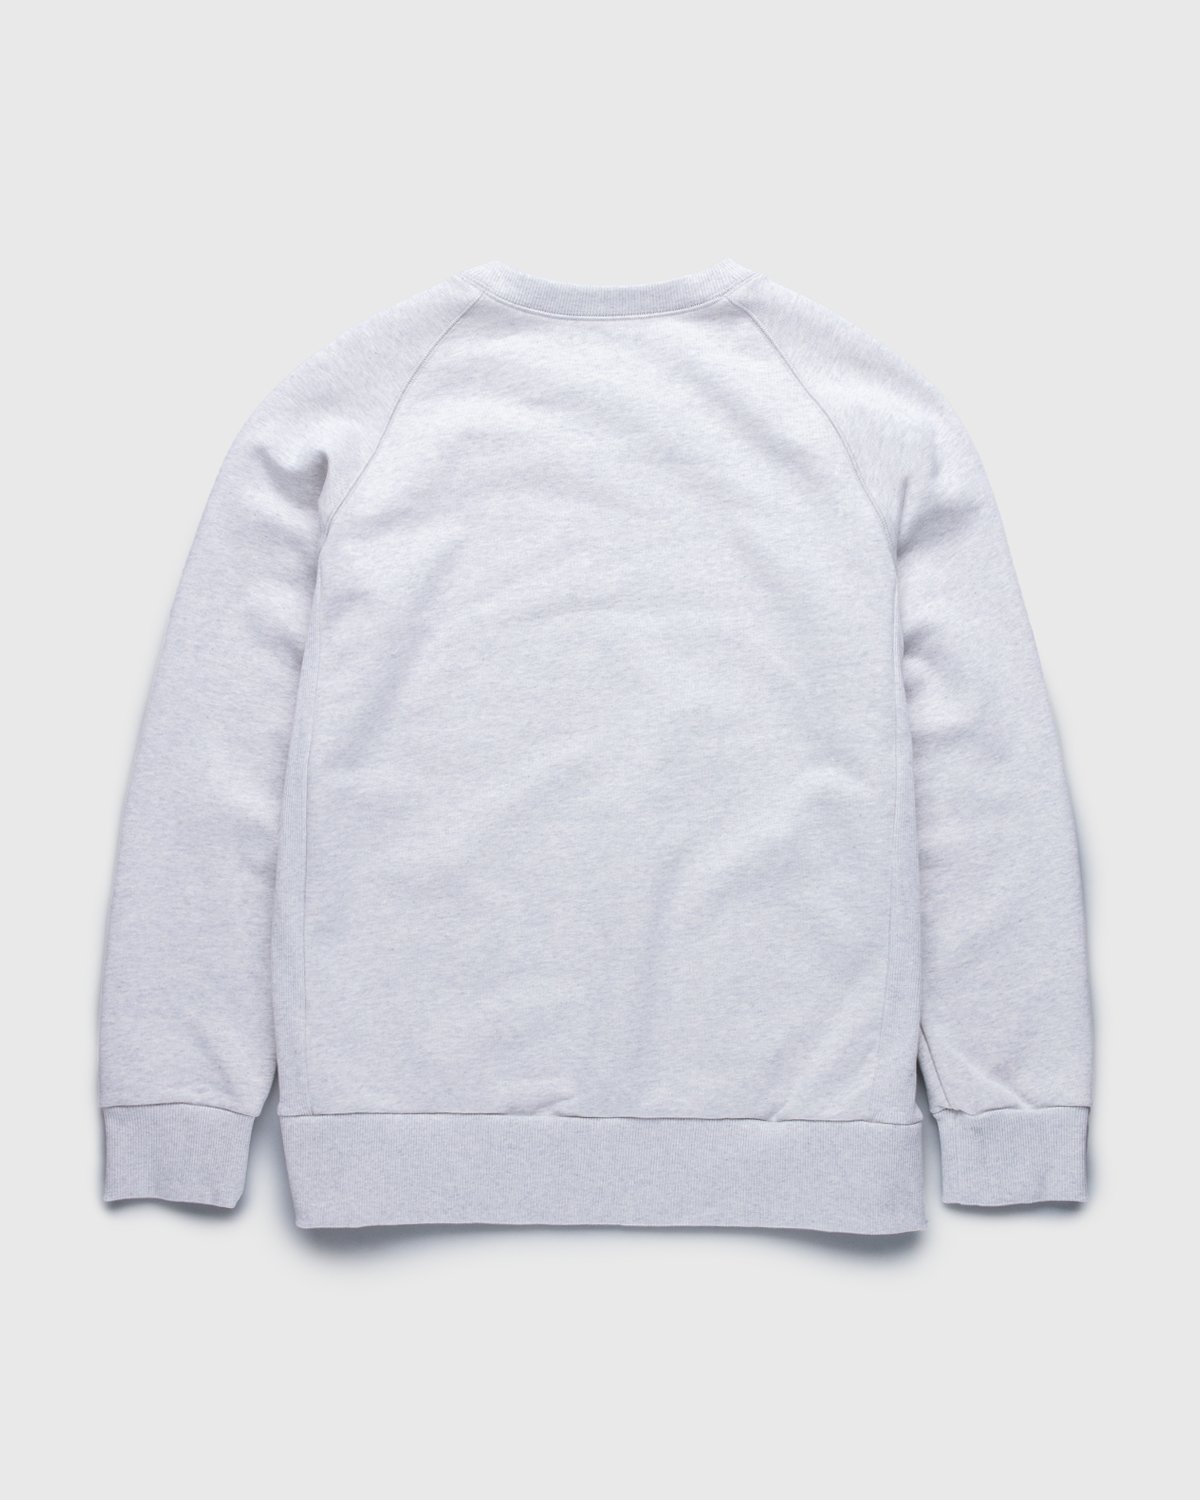 A.P.C. x Sacai - Tani Sweater Light Grey - Clothing - Grey - Image 2